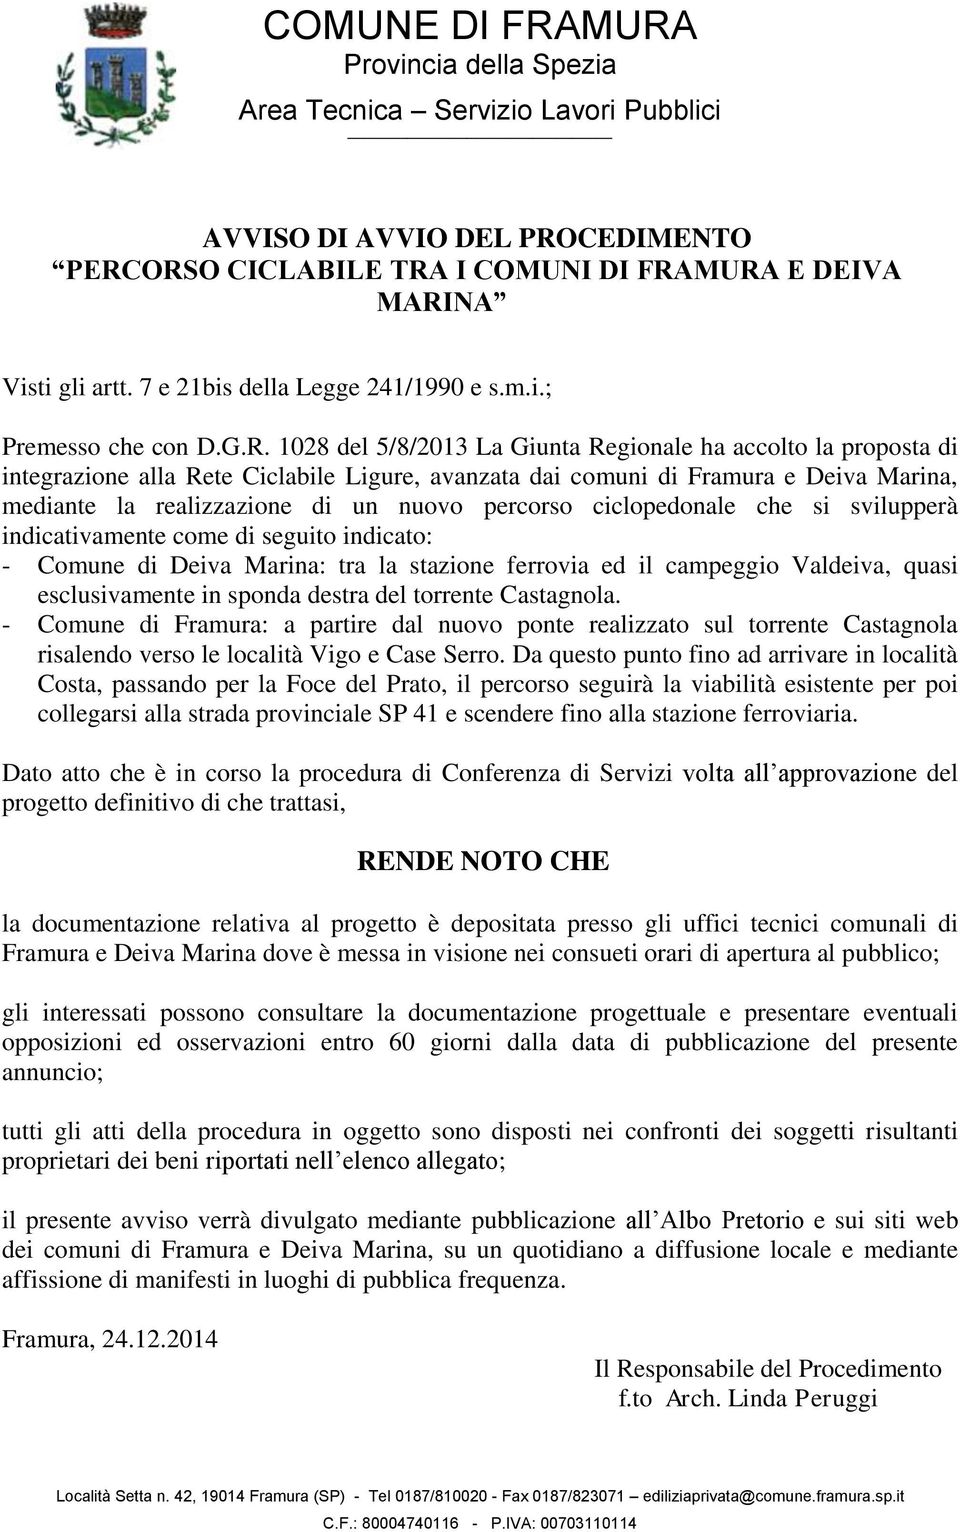 102 del 5//2013 La Giunta Regionale ha accolto la proposta di integrazione alla Rete Ciclabile Ligure, avanzata dai comuni di Framura e Deiva Marina, mediante la realizzazione di un nuovo percorso